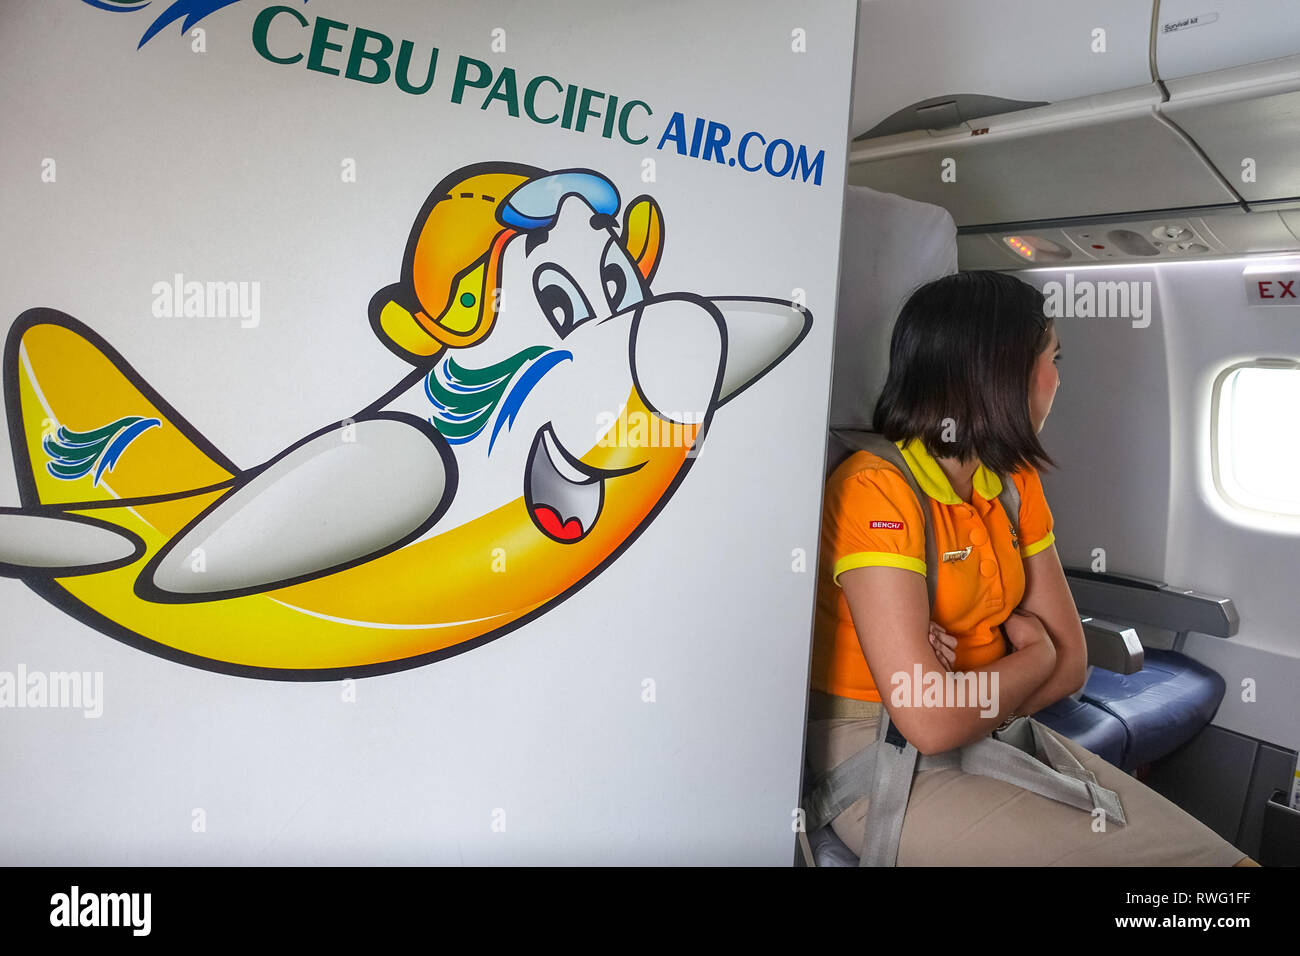 Jeune femme au bord de la fenêtre, avec le siège d'avion Cebu Pacific  Airline Logo Photo Stock - Alamy